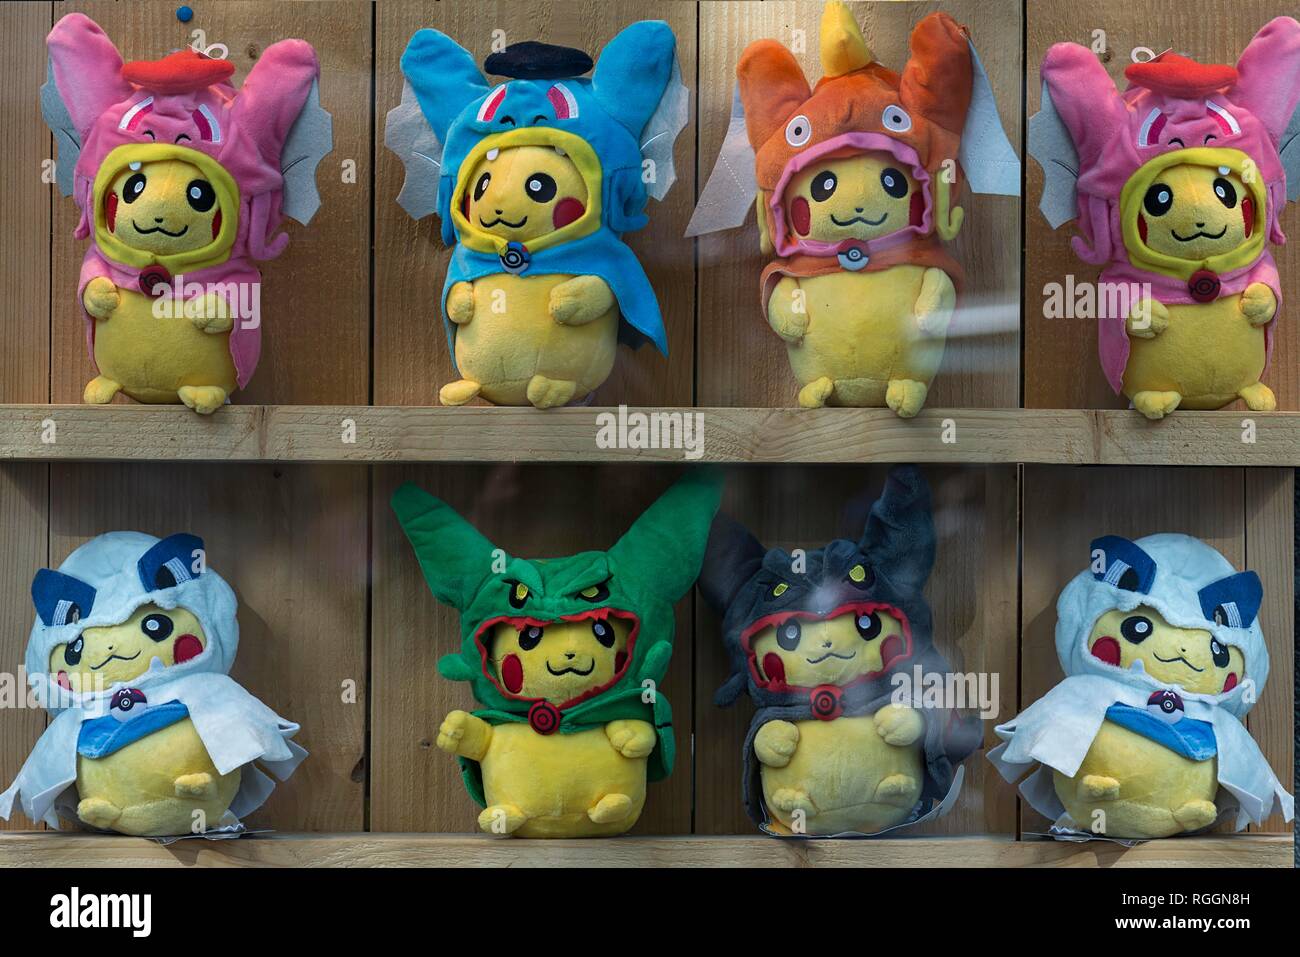 Pikachu, Pokemon peluche bambole con maschere diverse in una vetrina, Paesi Bassi Foto Stock